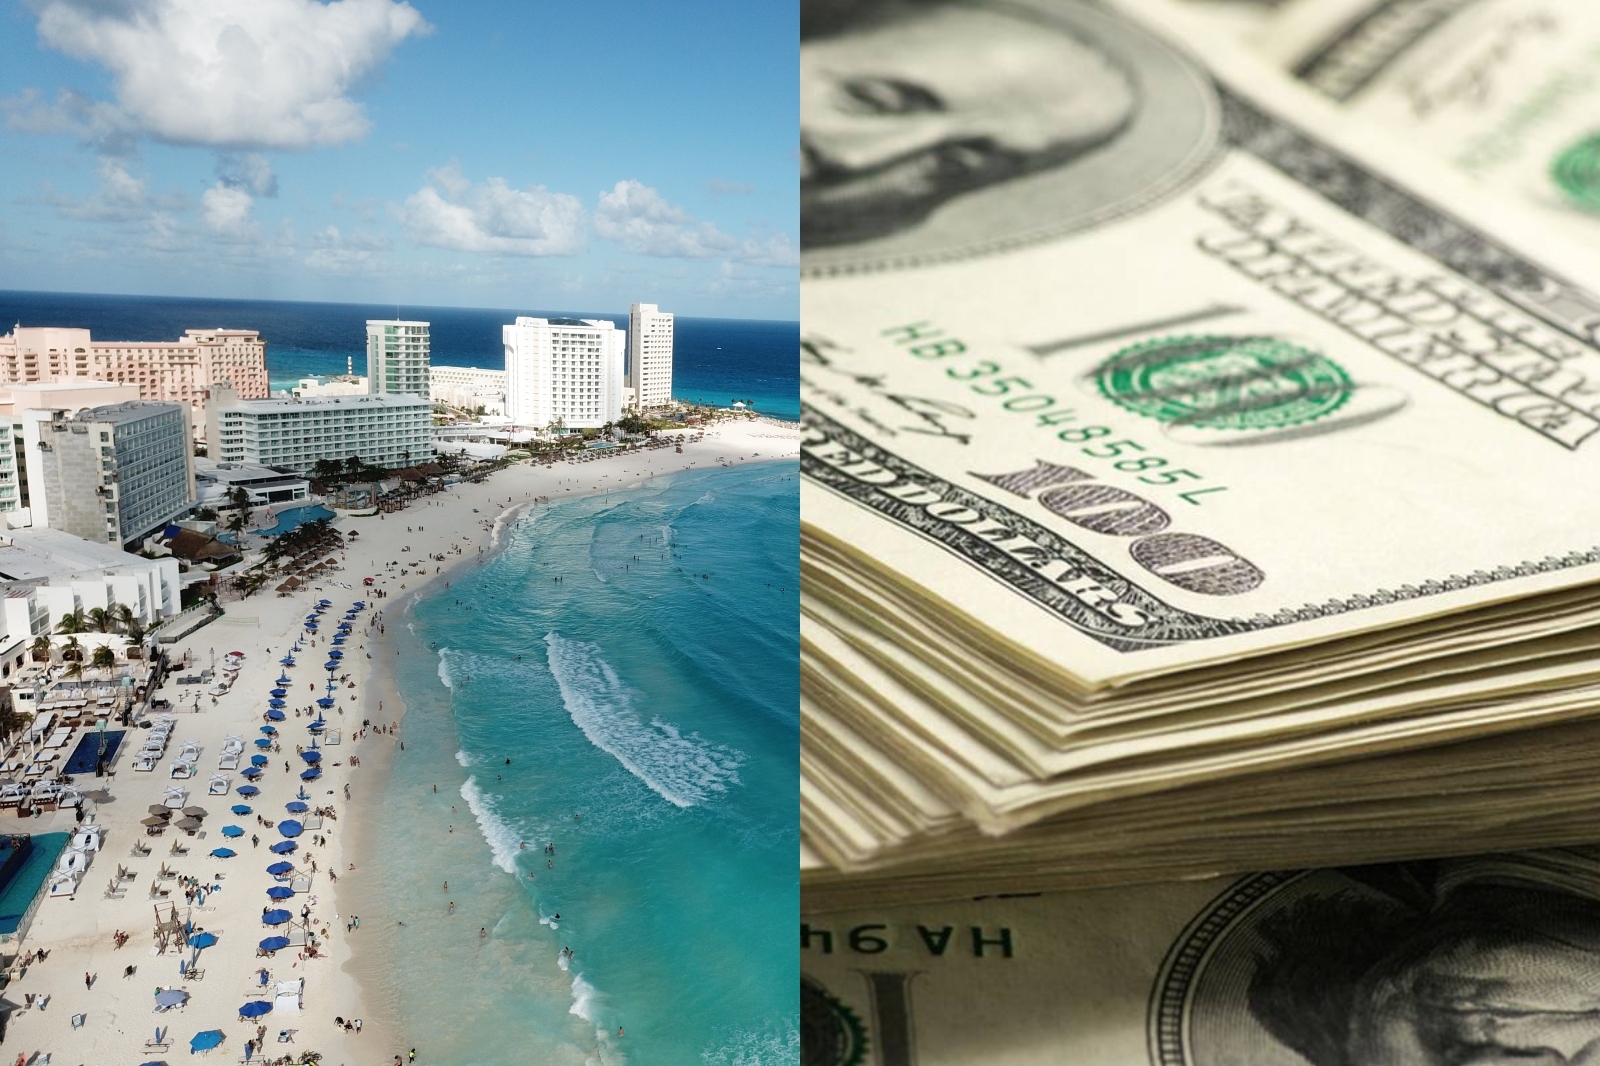 El dólar se cotizó levemente por arriba de los 20 pesos mexicanos, según la casa de cambio dentro del aeropuerto de Cancún, en Quintana Roo